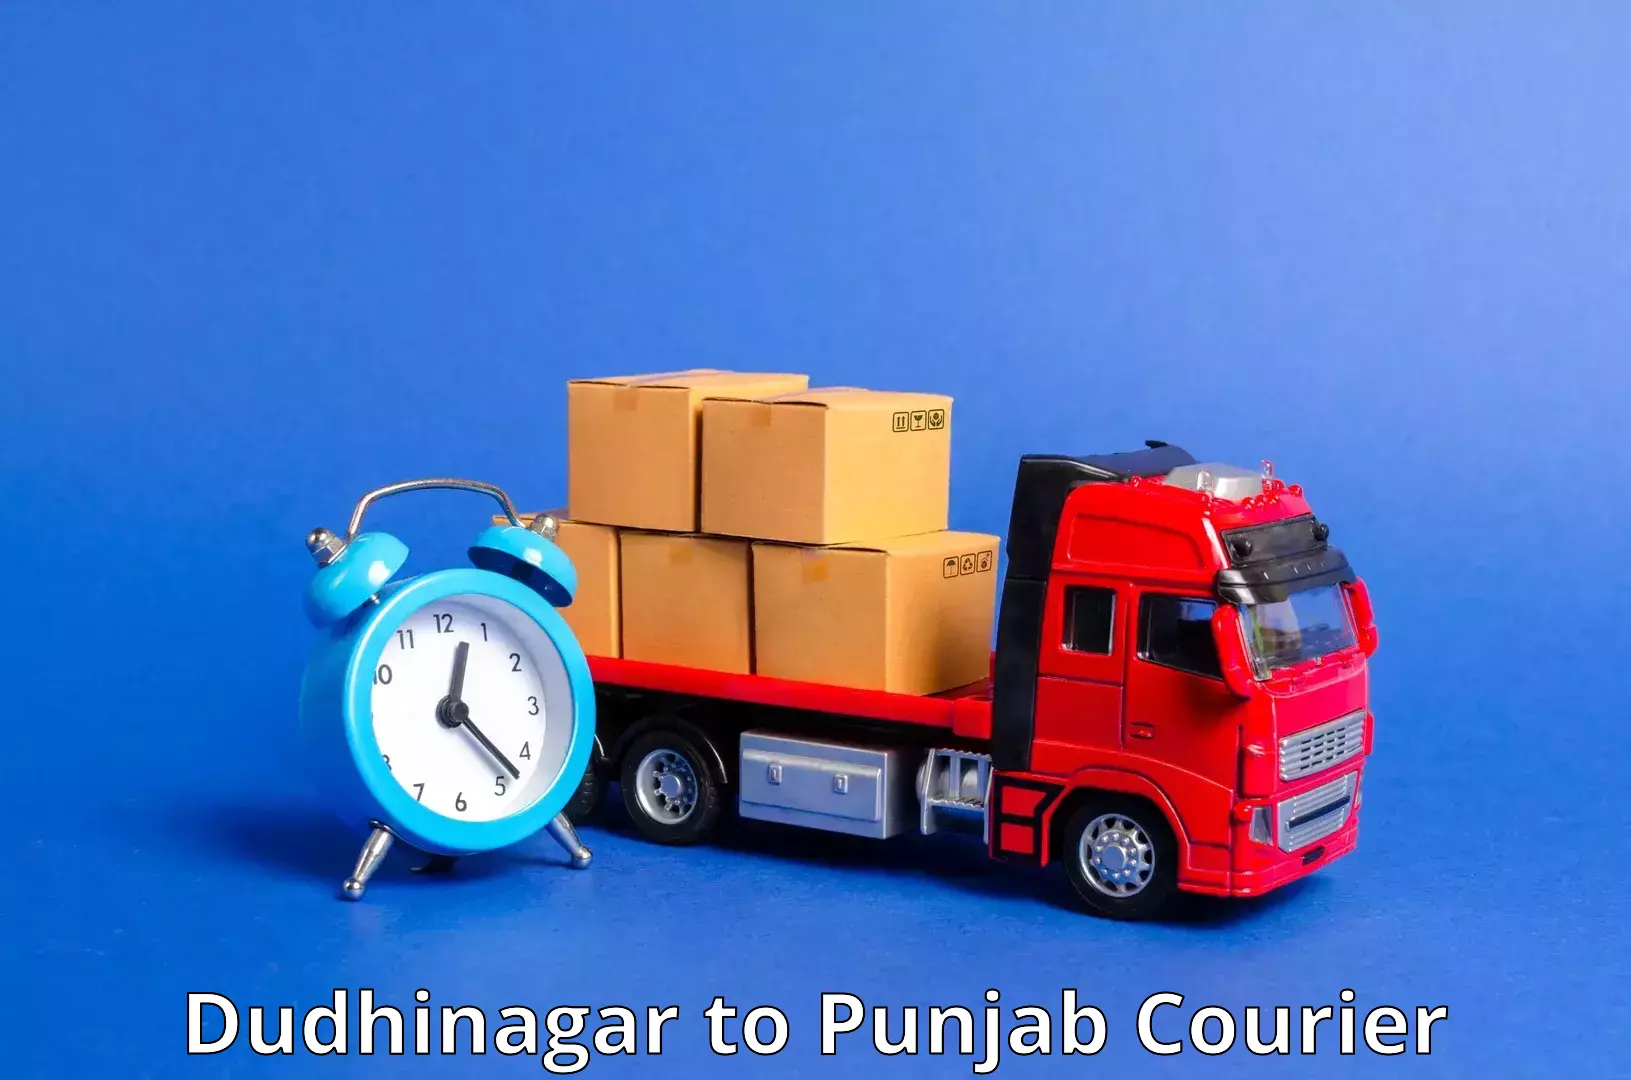 Tracking updates Dudhinagar to Mandi Gobindgarh